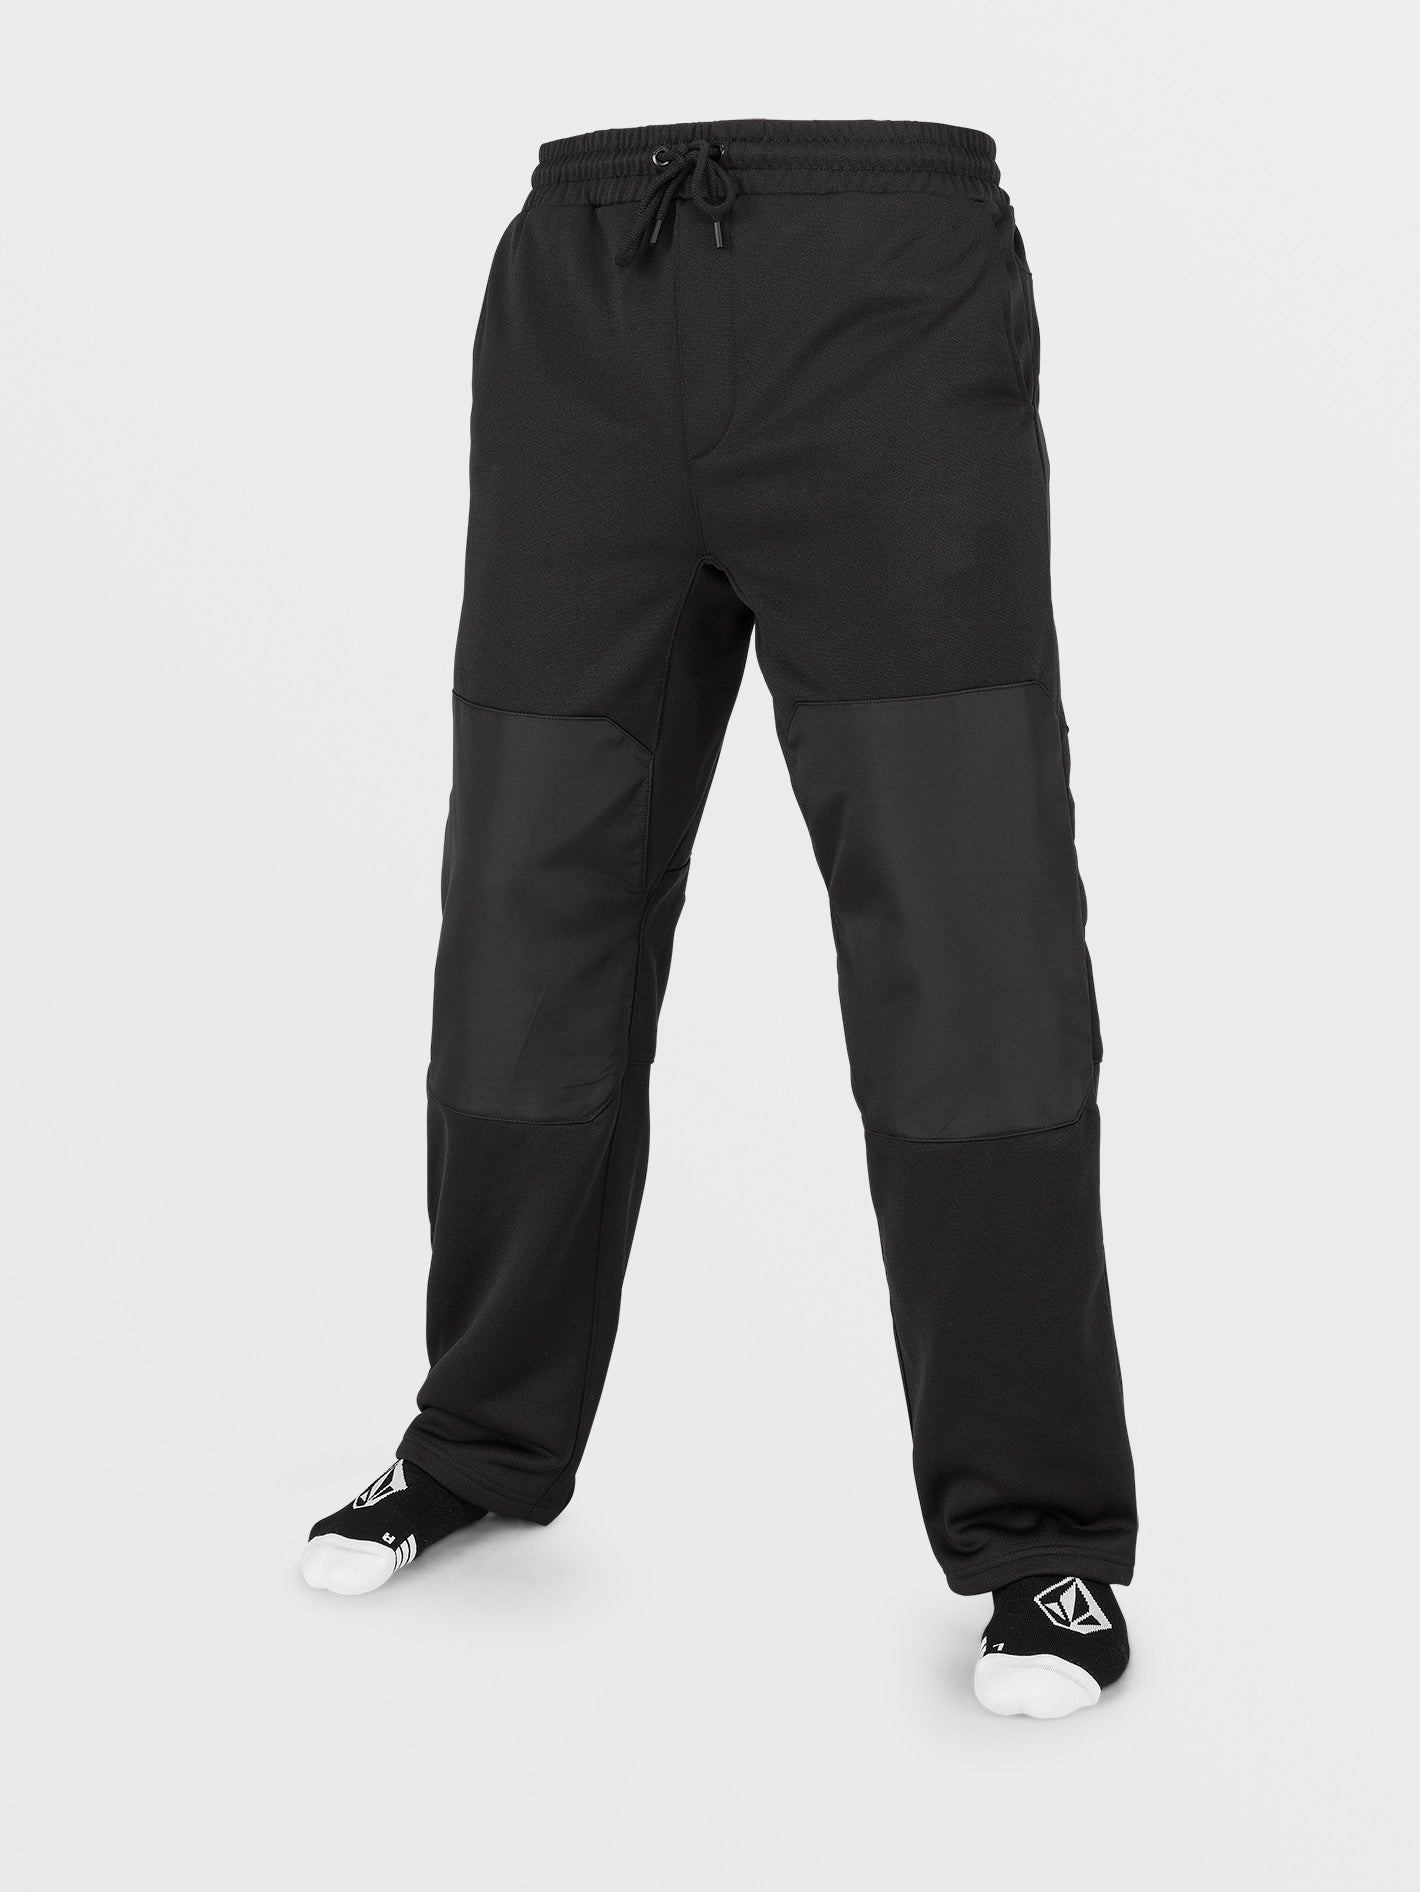 40 Best Nike tech fleece pants ideas  nike tech fleece pants, nike tech  fleece, tech fleece